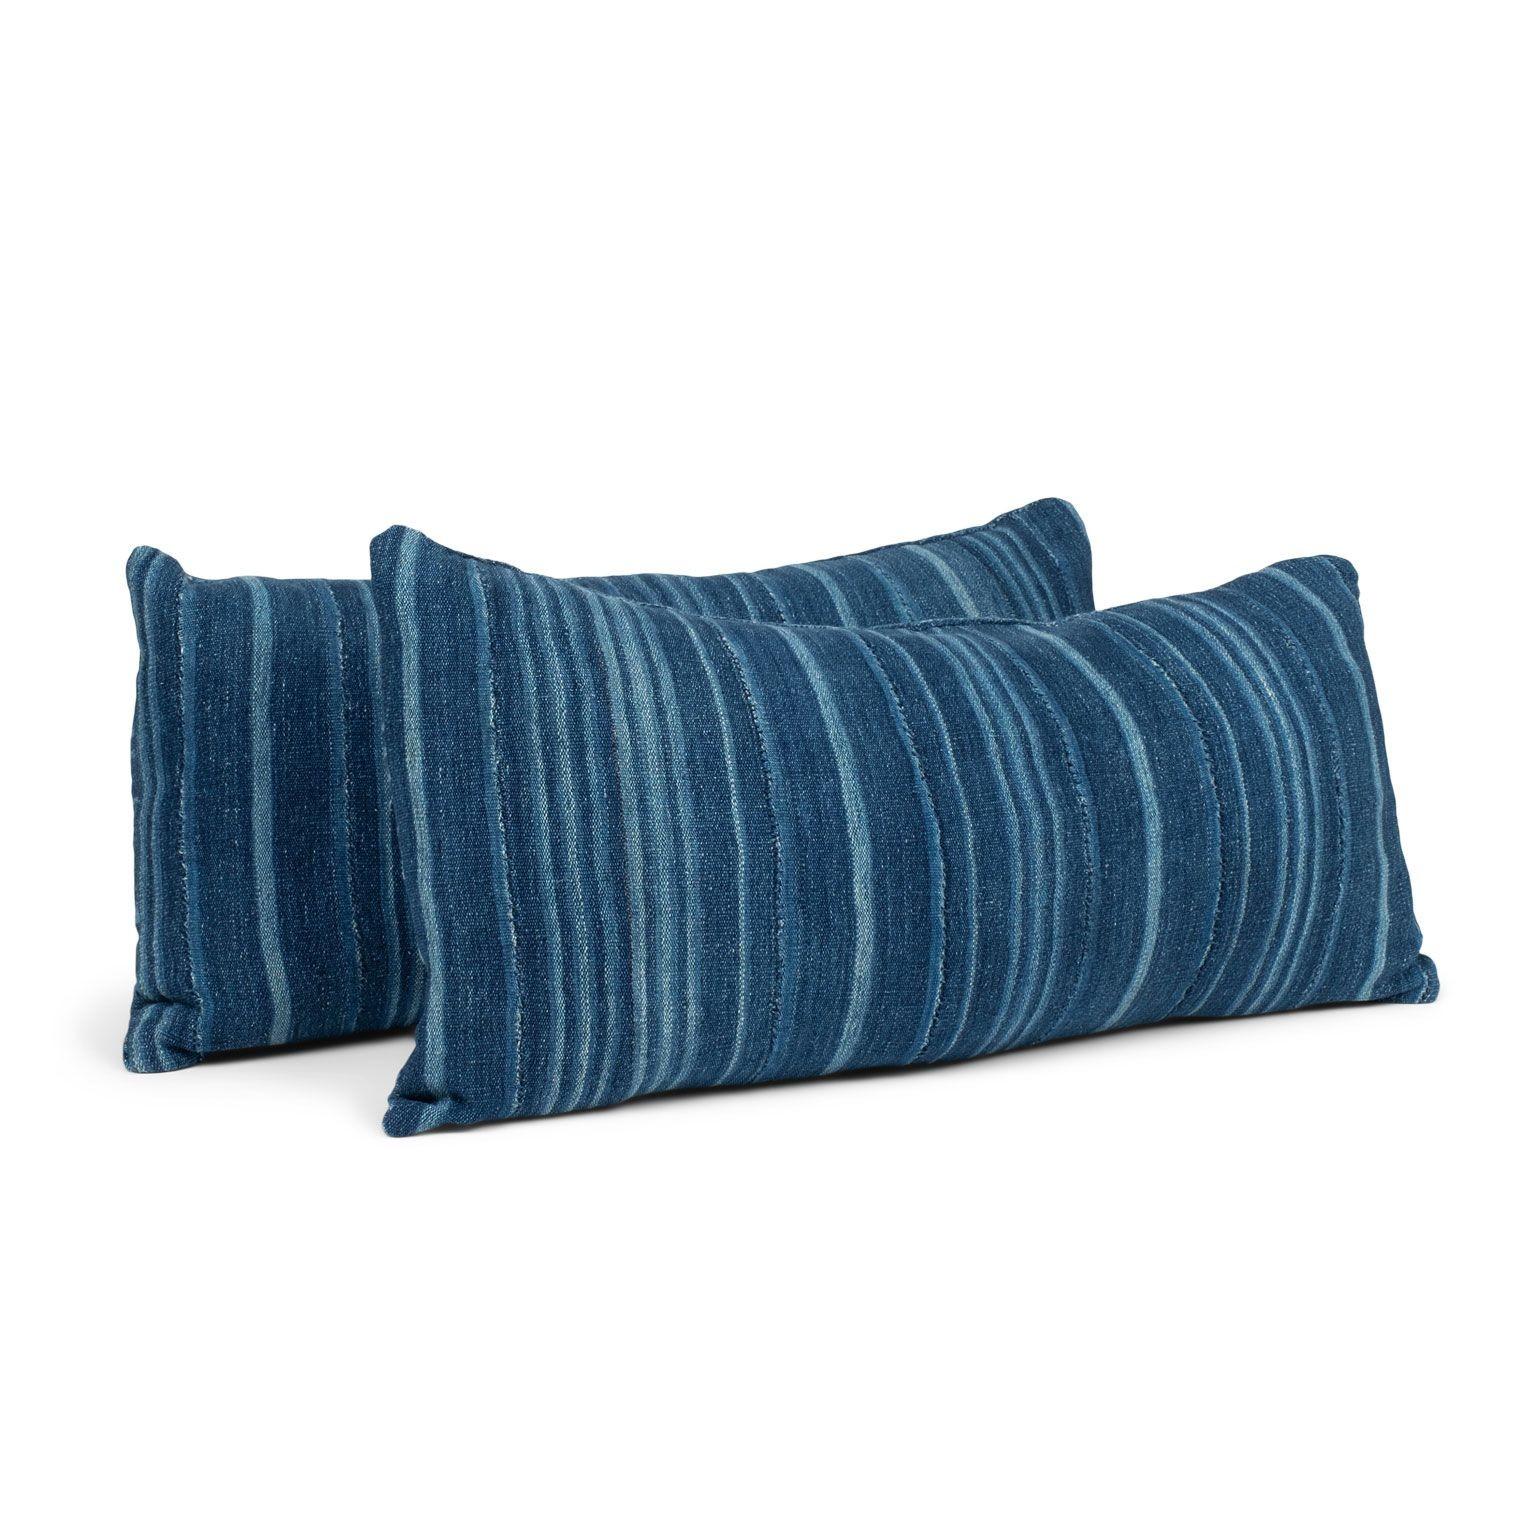 Large Faded Indigo Tone-on-Tone Striped Lumbar Cushion For Sale 1